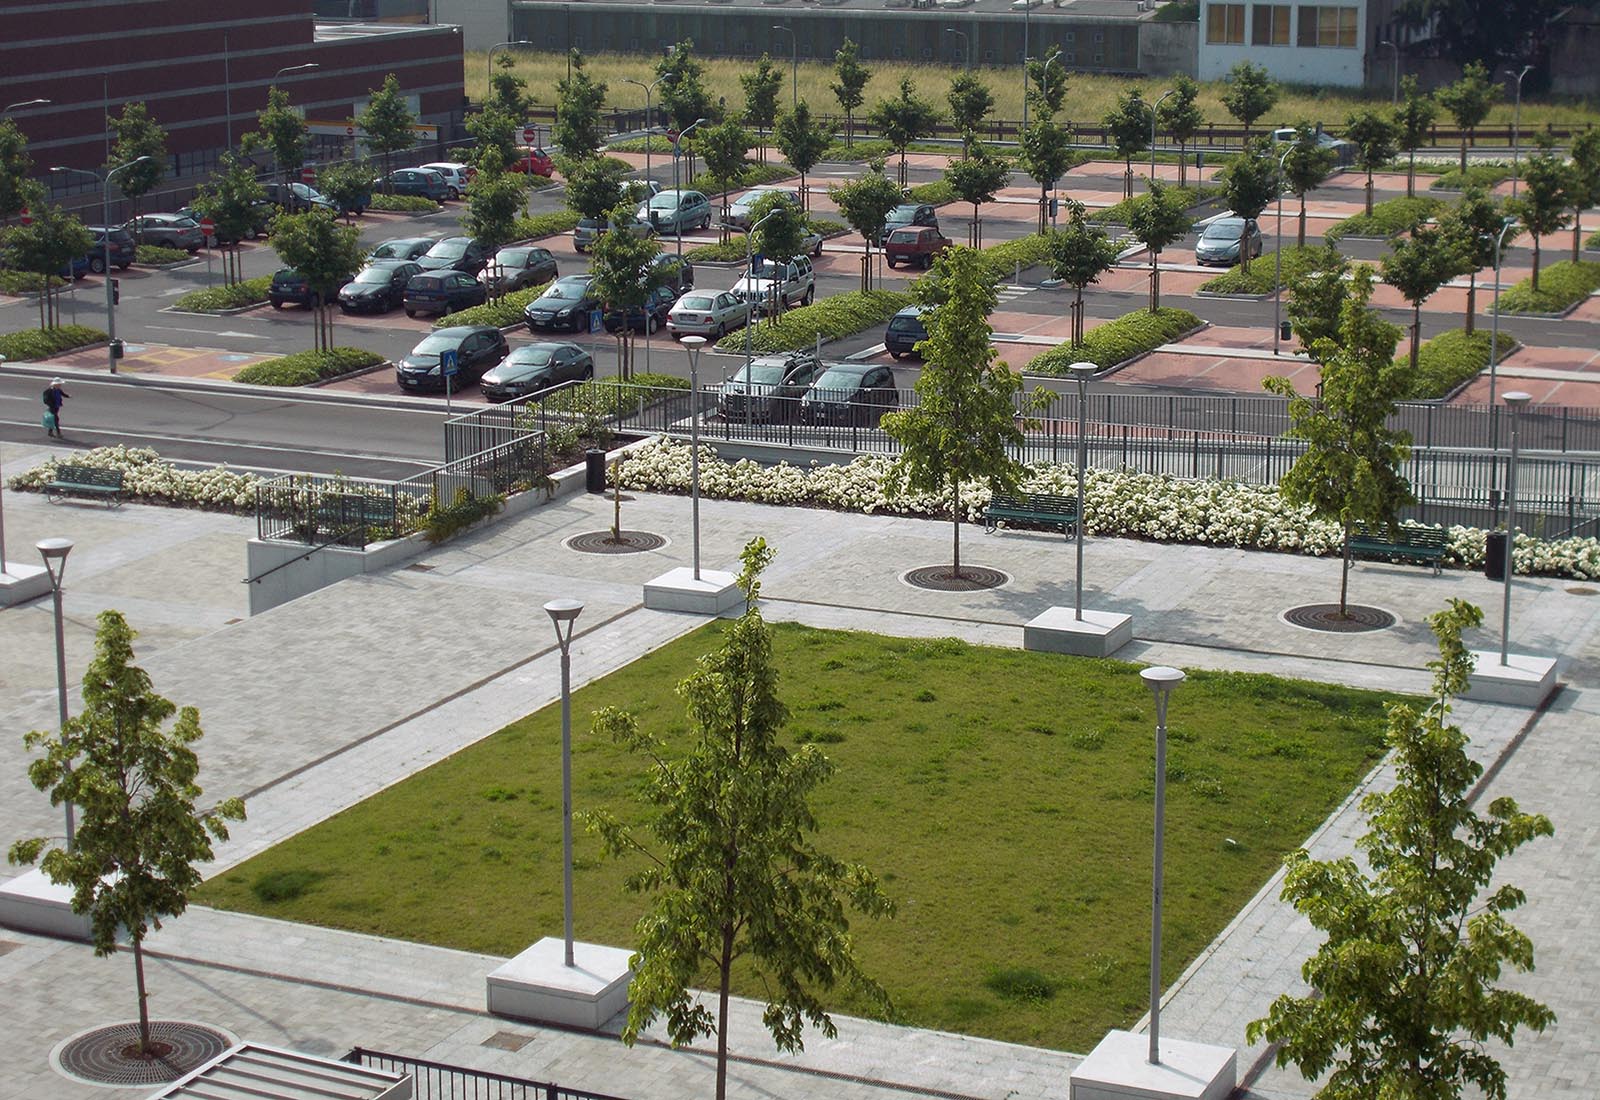 Piazza e parcheggio Adriano - La piazza e il parcheggio sud